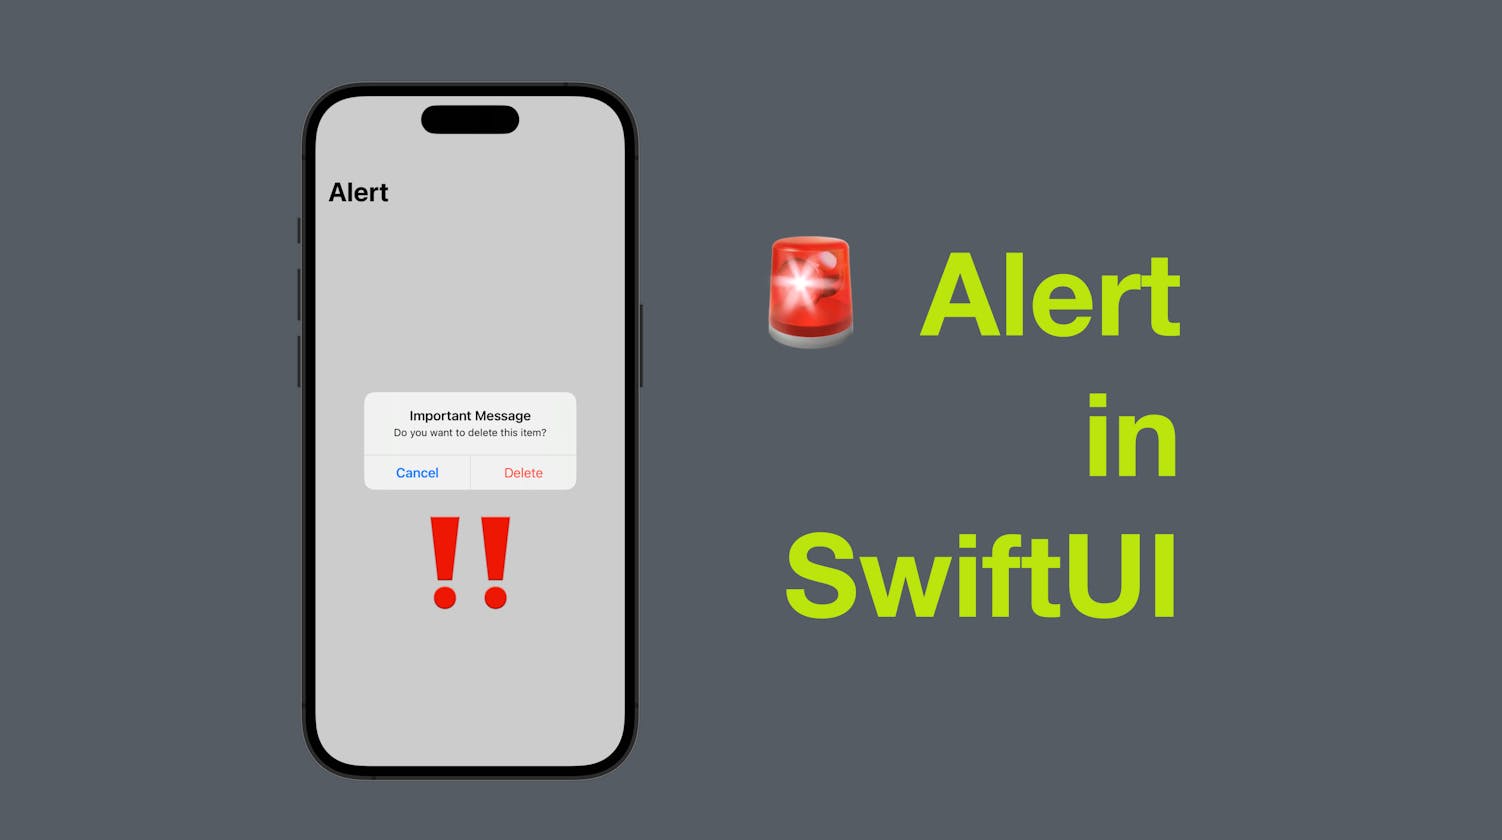 Alert in SwiftUI